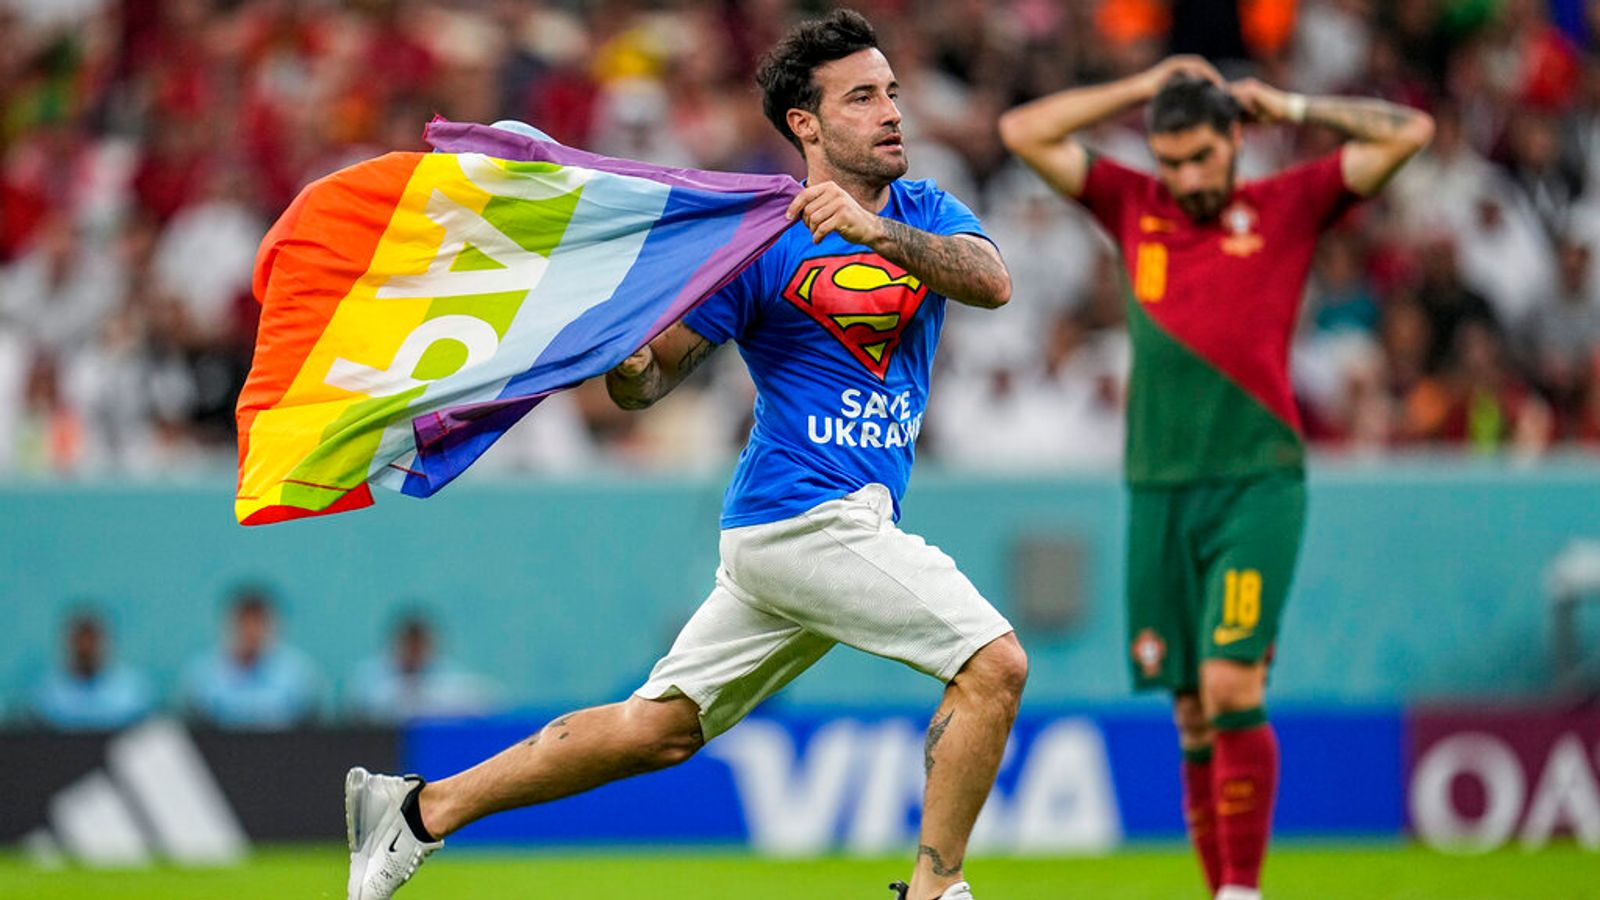 ワールドカップ: 虹色の旗を持った抗議者が試合中にスタジアムに侵入 | 世界のニュース